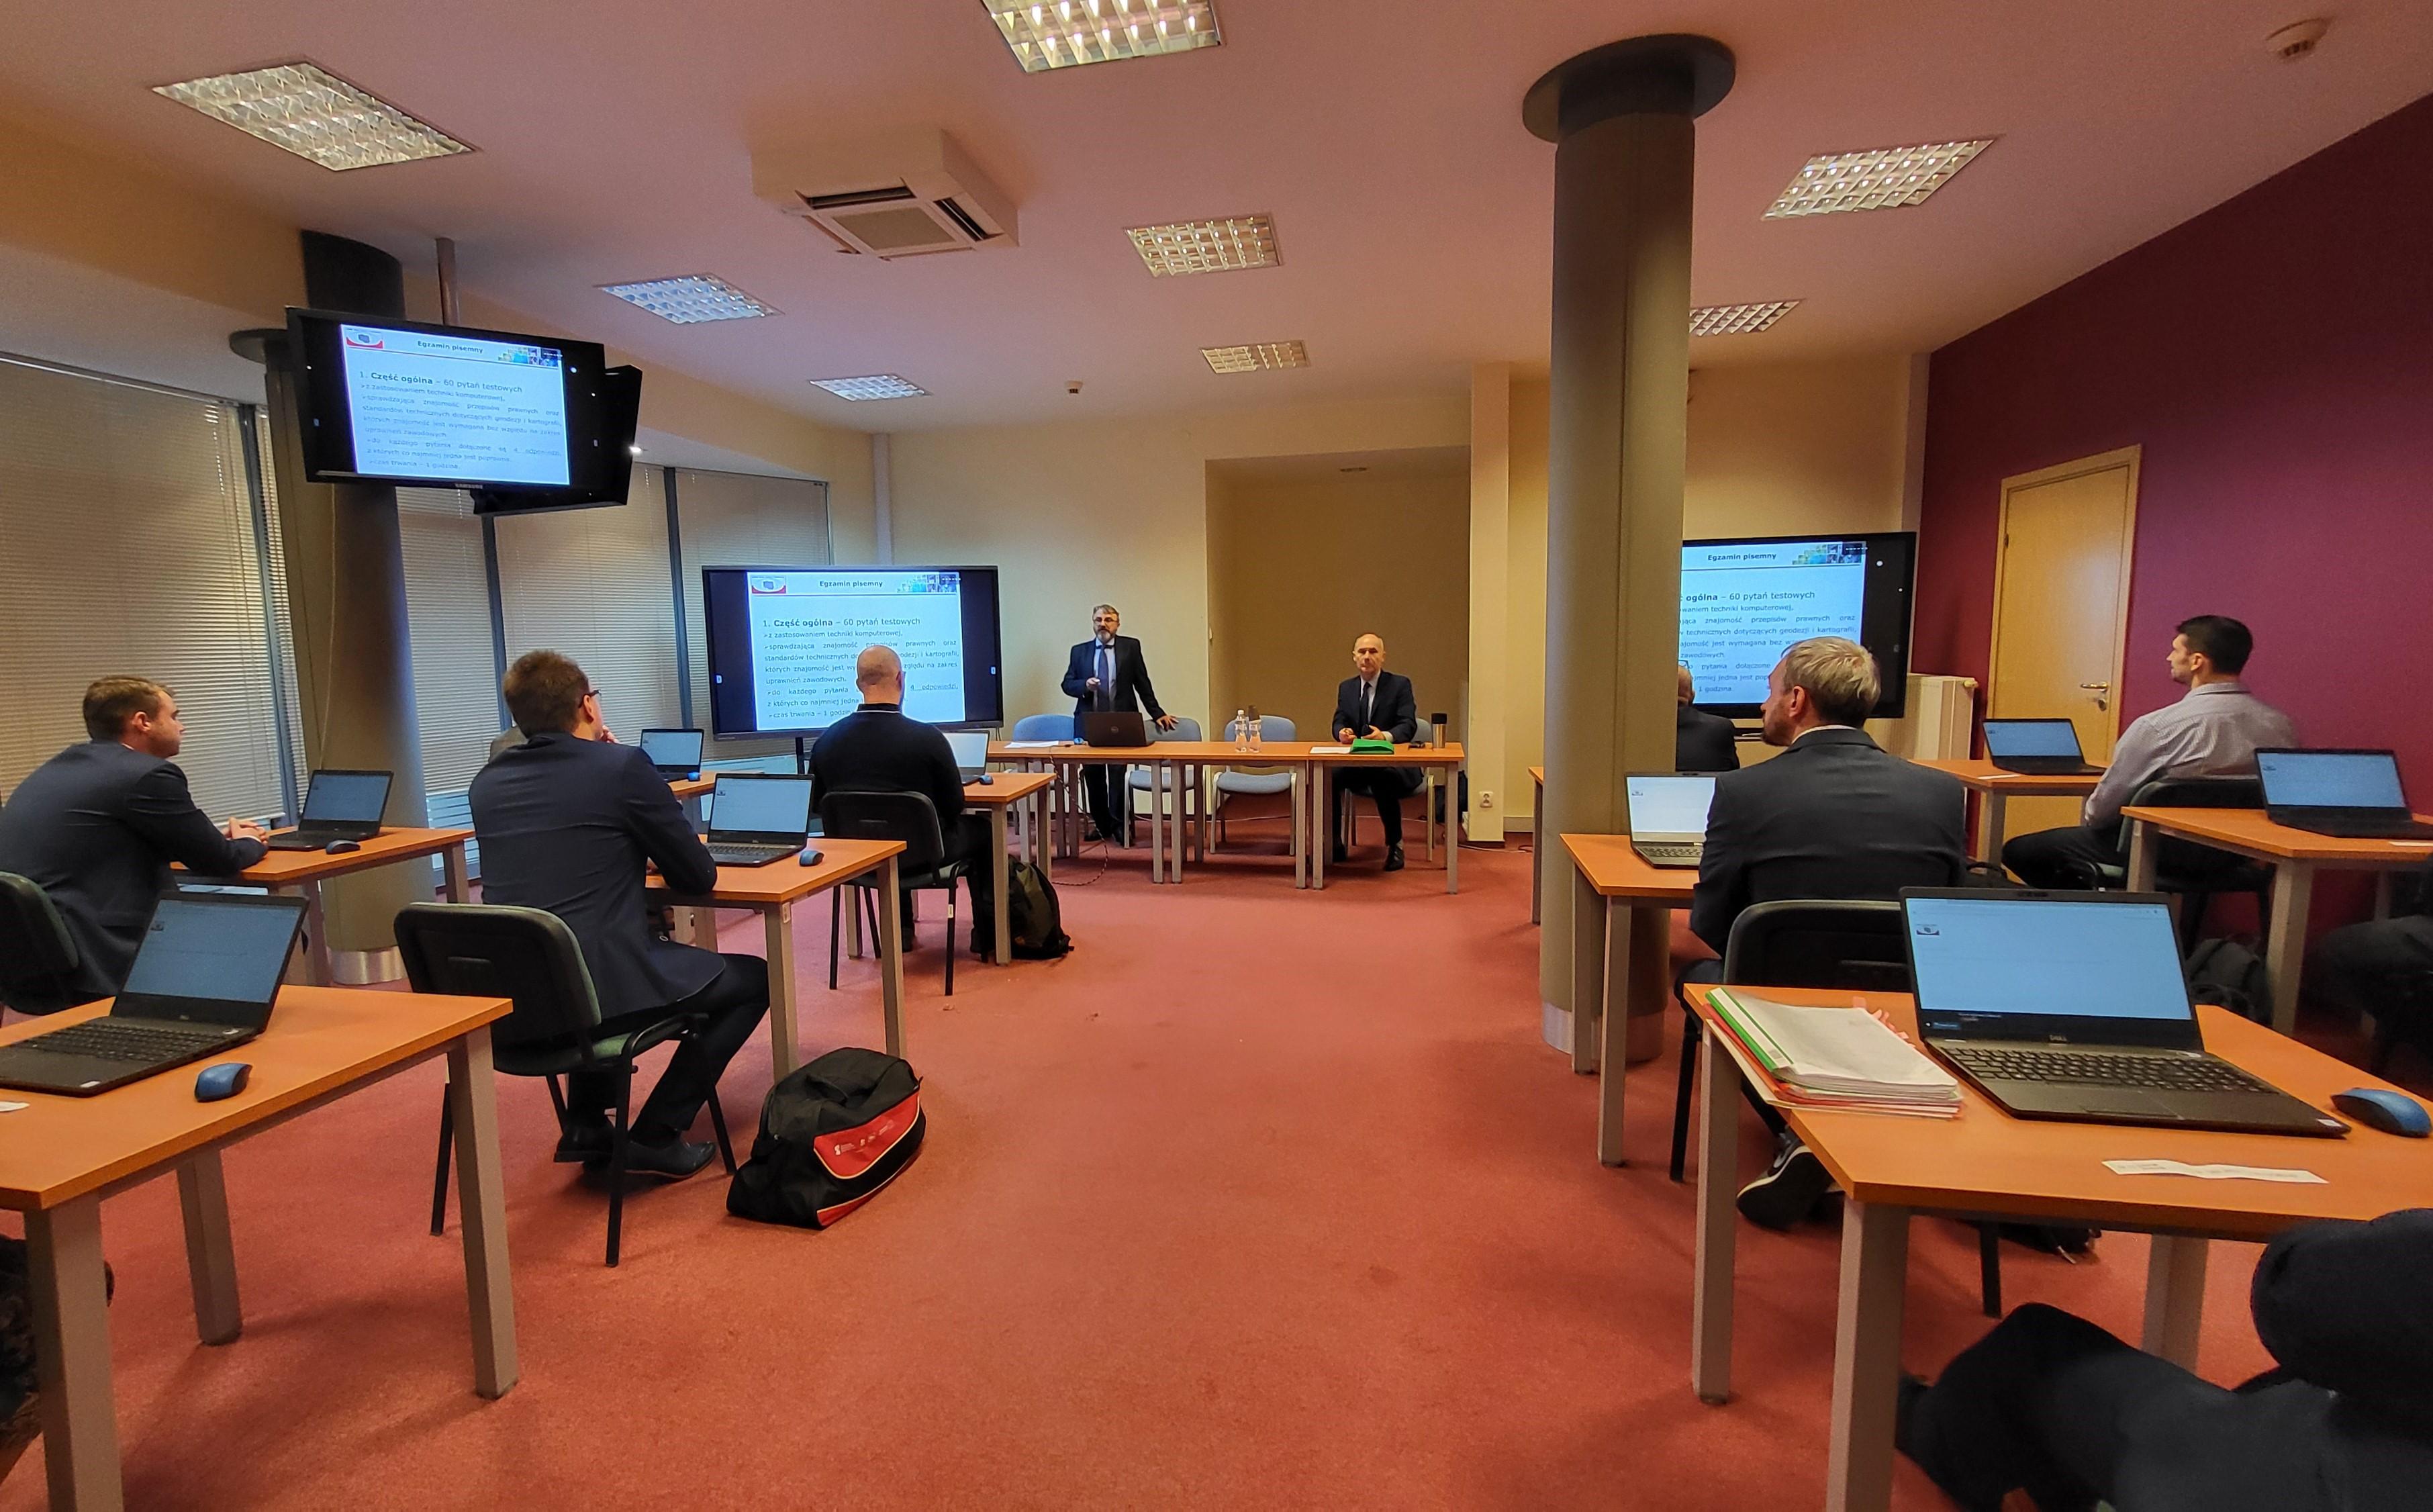 Zdjęcie przedstawia salę egzaminacyjną z członkami Komisji egzaminacyjnej i osobami przystępującymi do egzaminu siedzącymi pojedynczo przed laptopami.